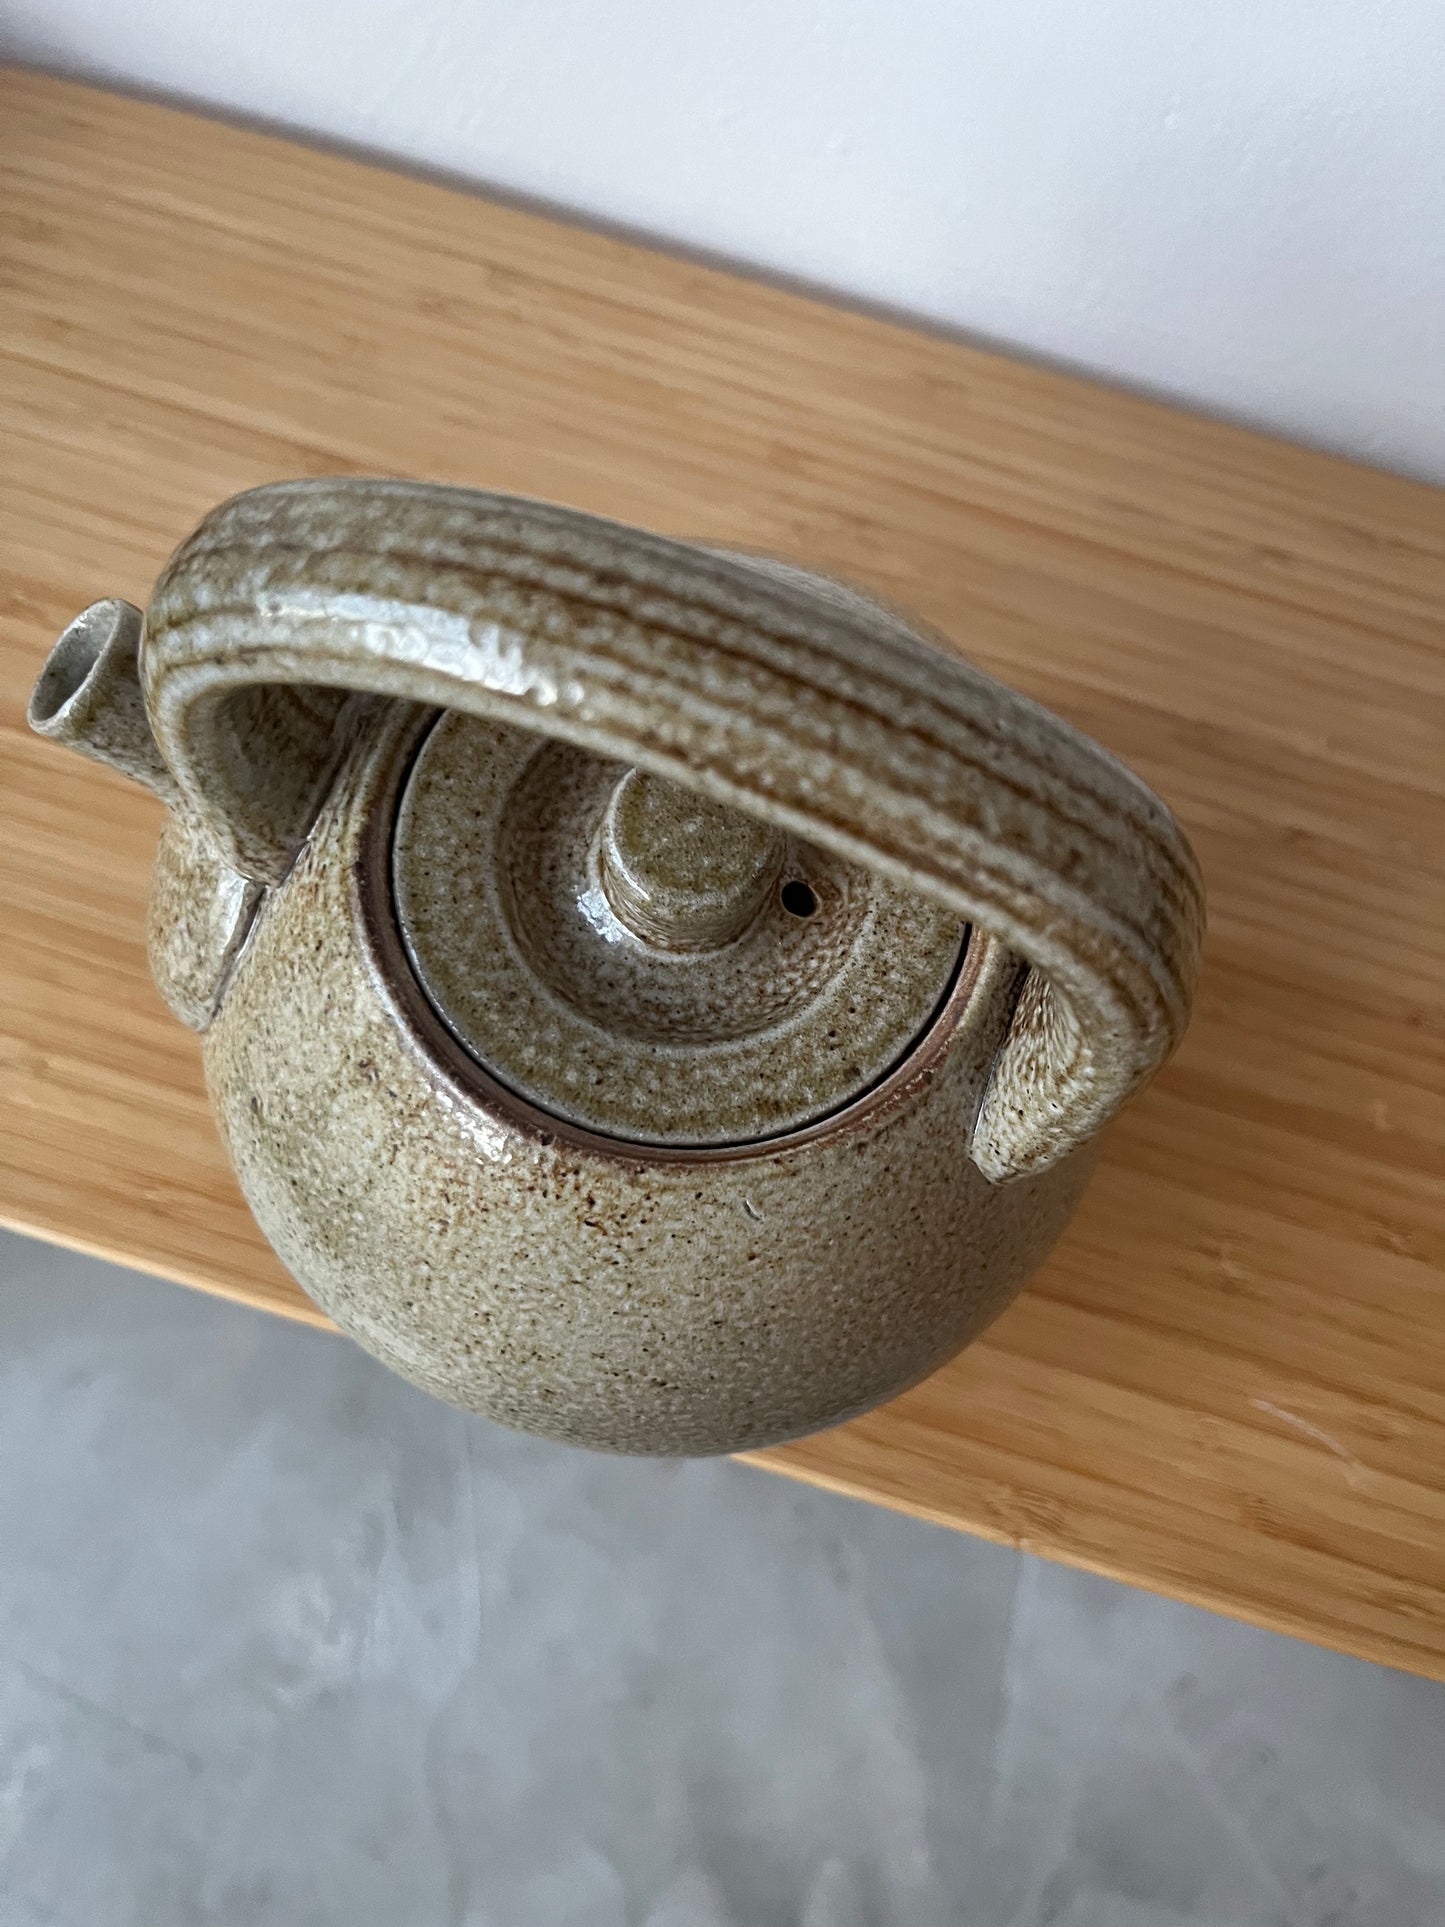 Salt Fired Teapot